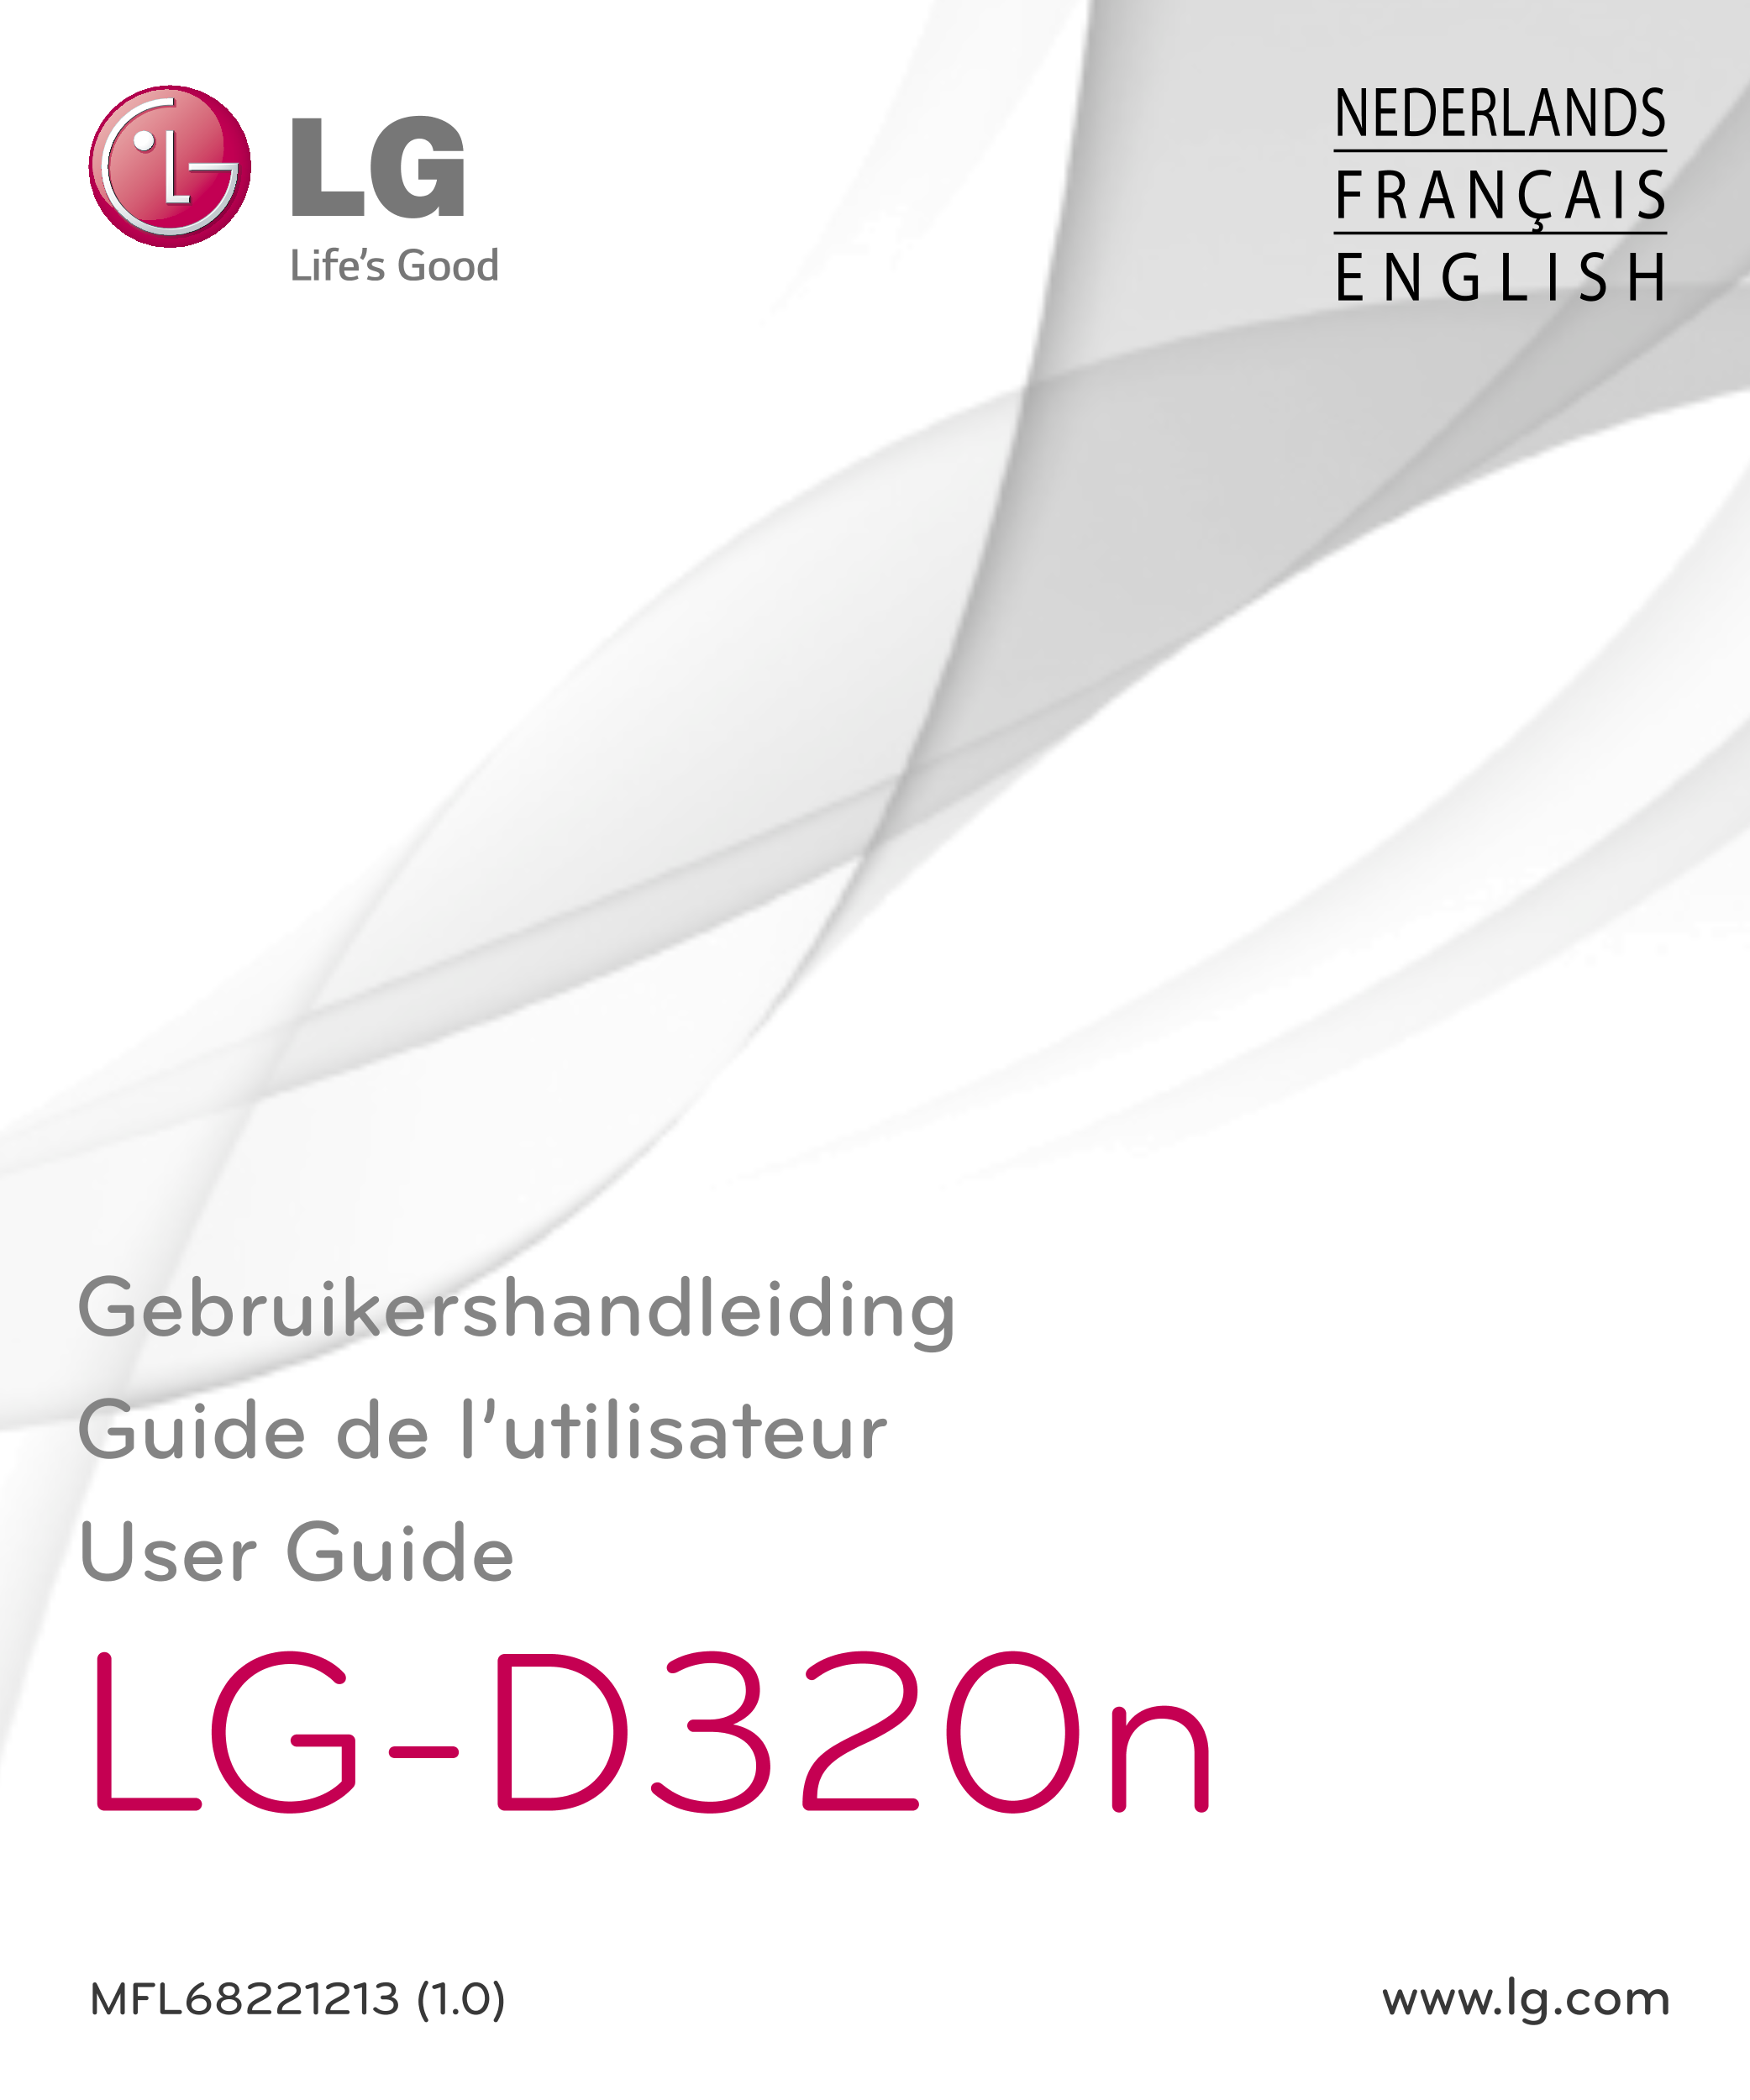 NEDERLANDS
FRANÇAIS
E N G L I S H
Gebruikershandleiding
Guide de l’utilisateur
User Guide
LG-D320n
MFL68221213 (1.0)  www.lg.com